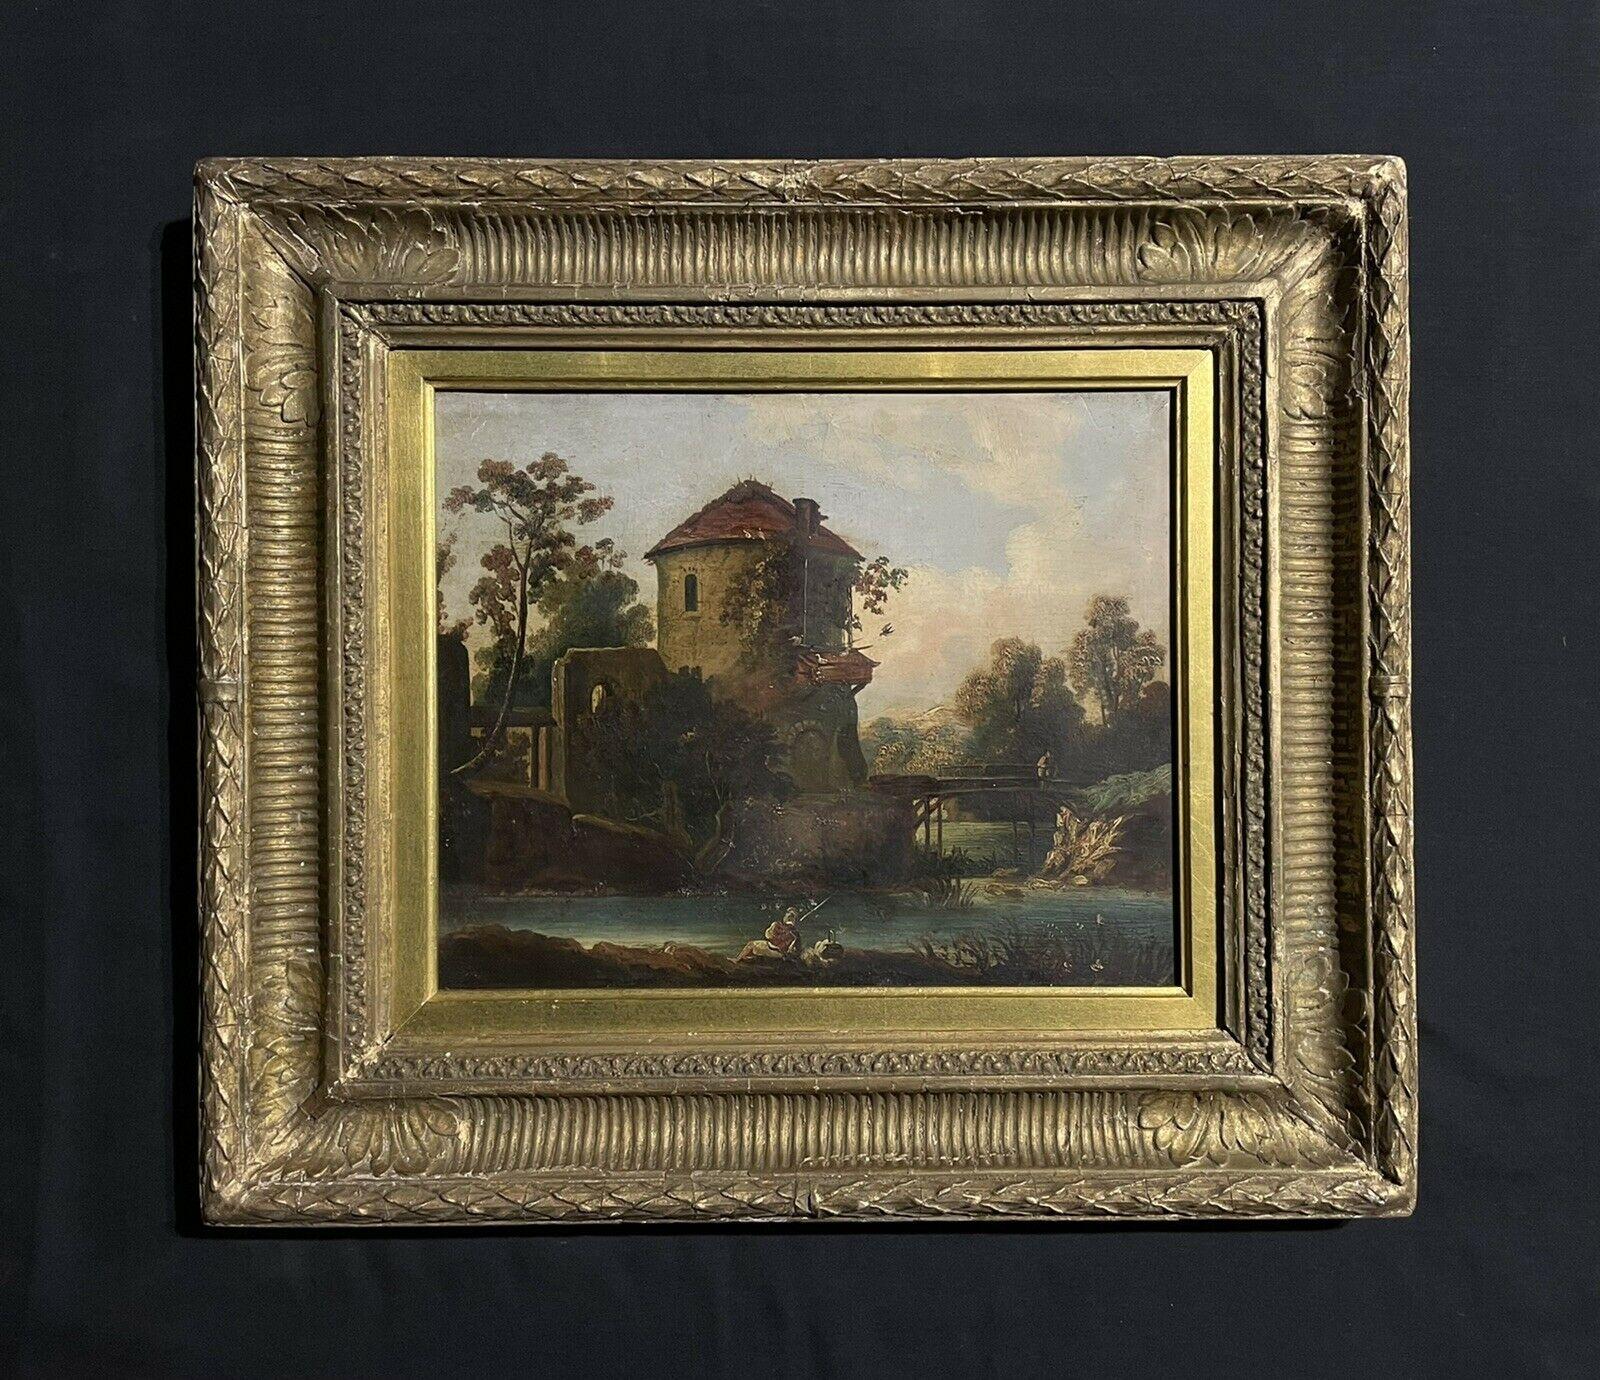 1800s landscape paintings